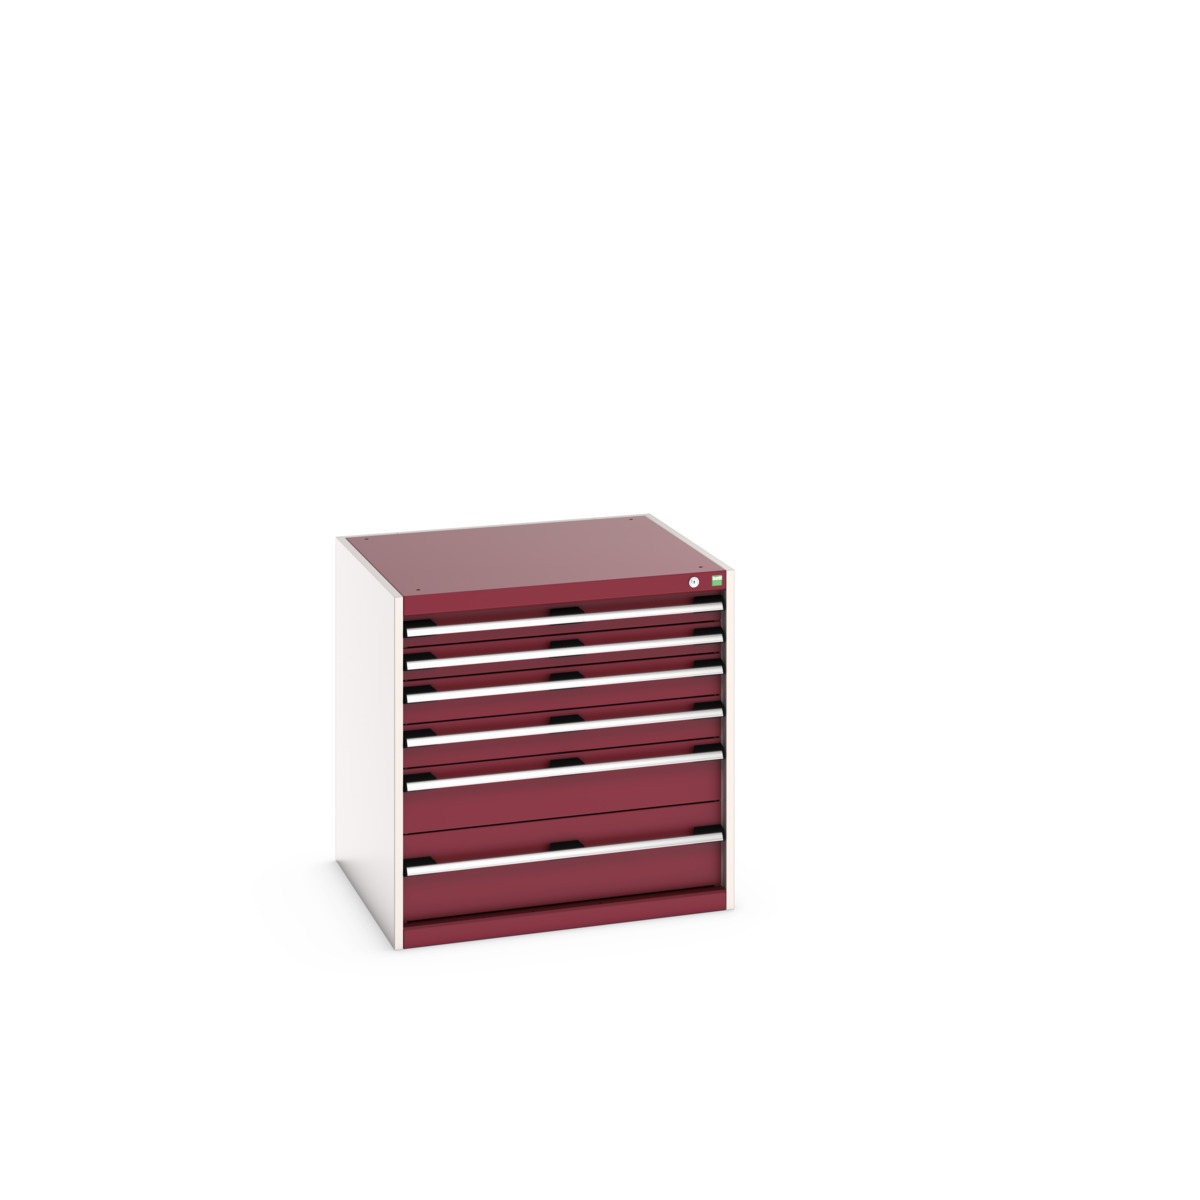 40028087.24V - cubio drawer cabinet